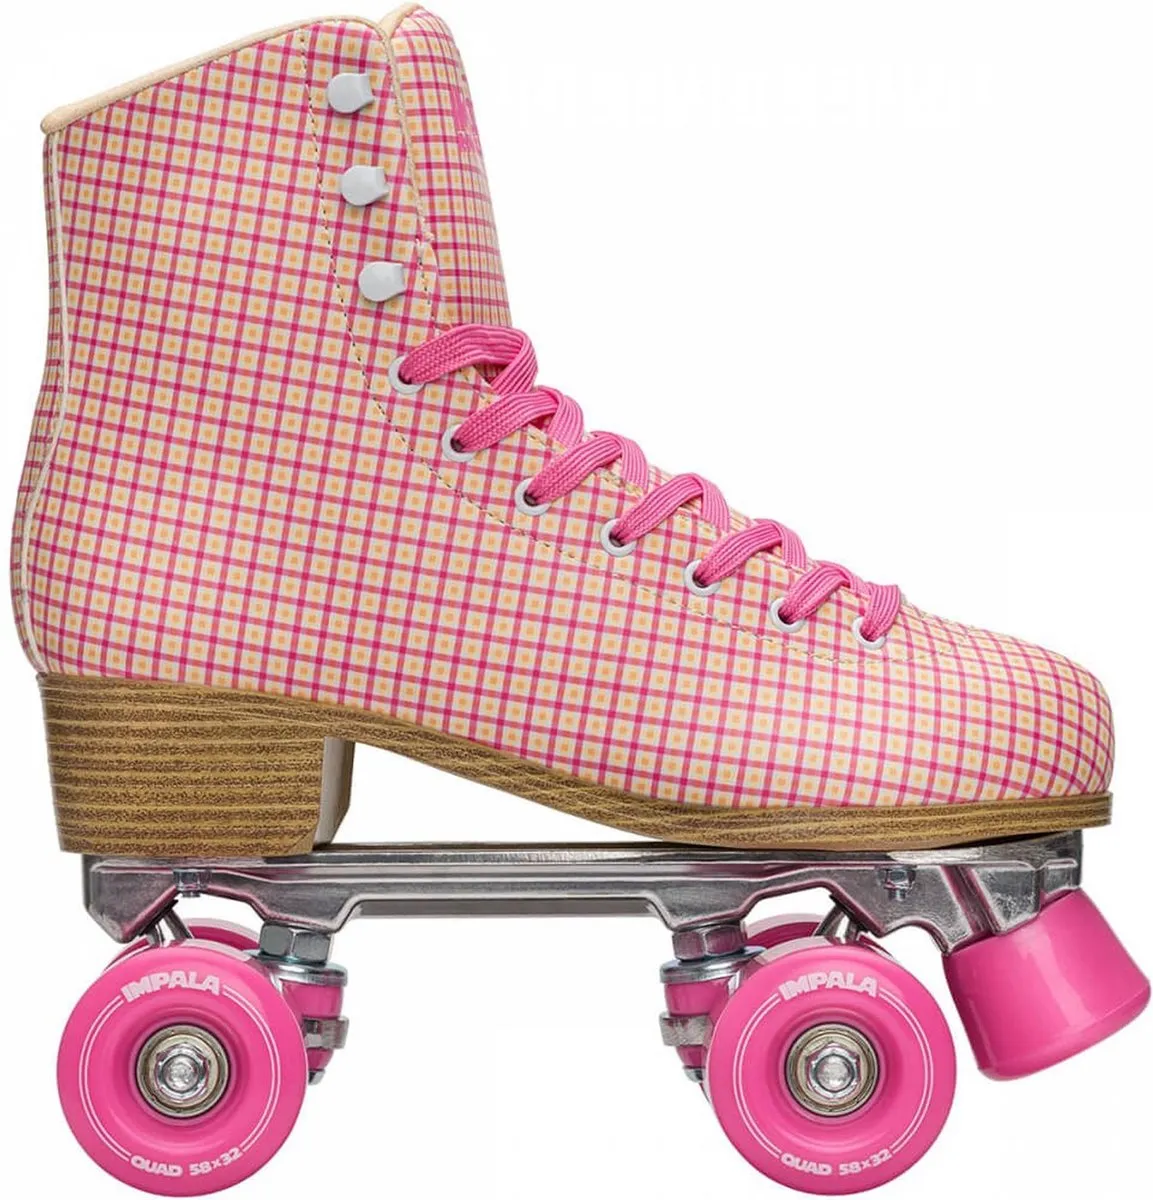 Impala Rolschaatsen - Maat 39Kinderen en volwassenen - roze - geel - wit speelgoed